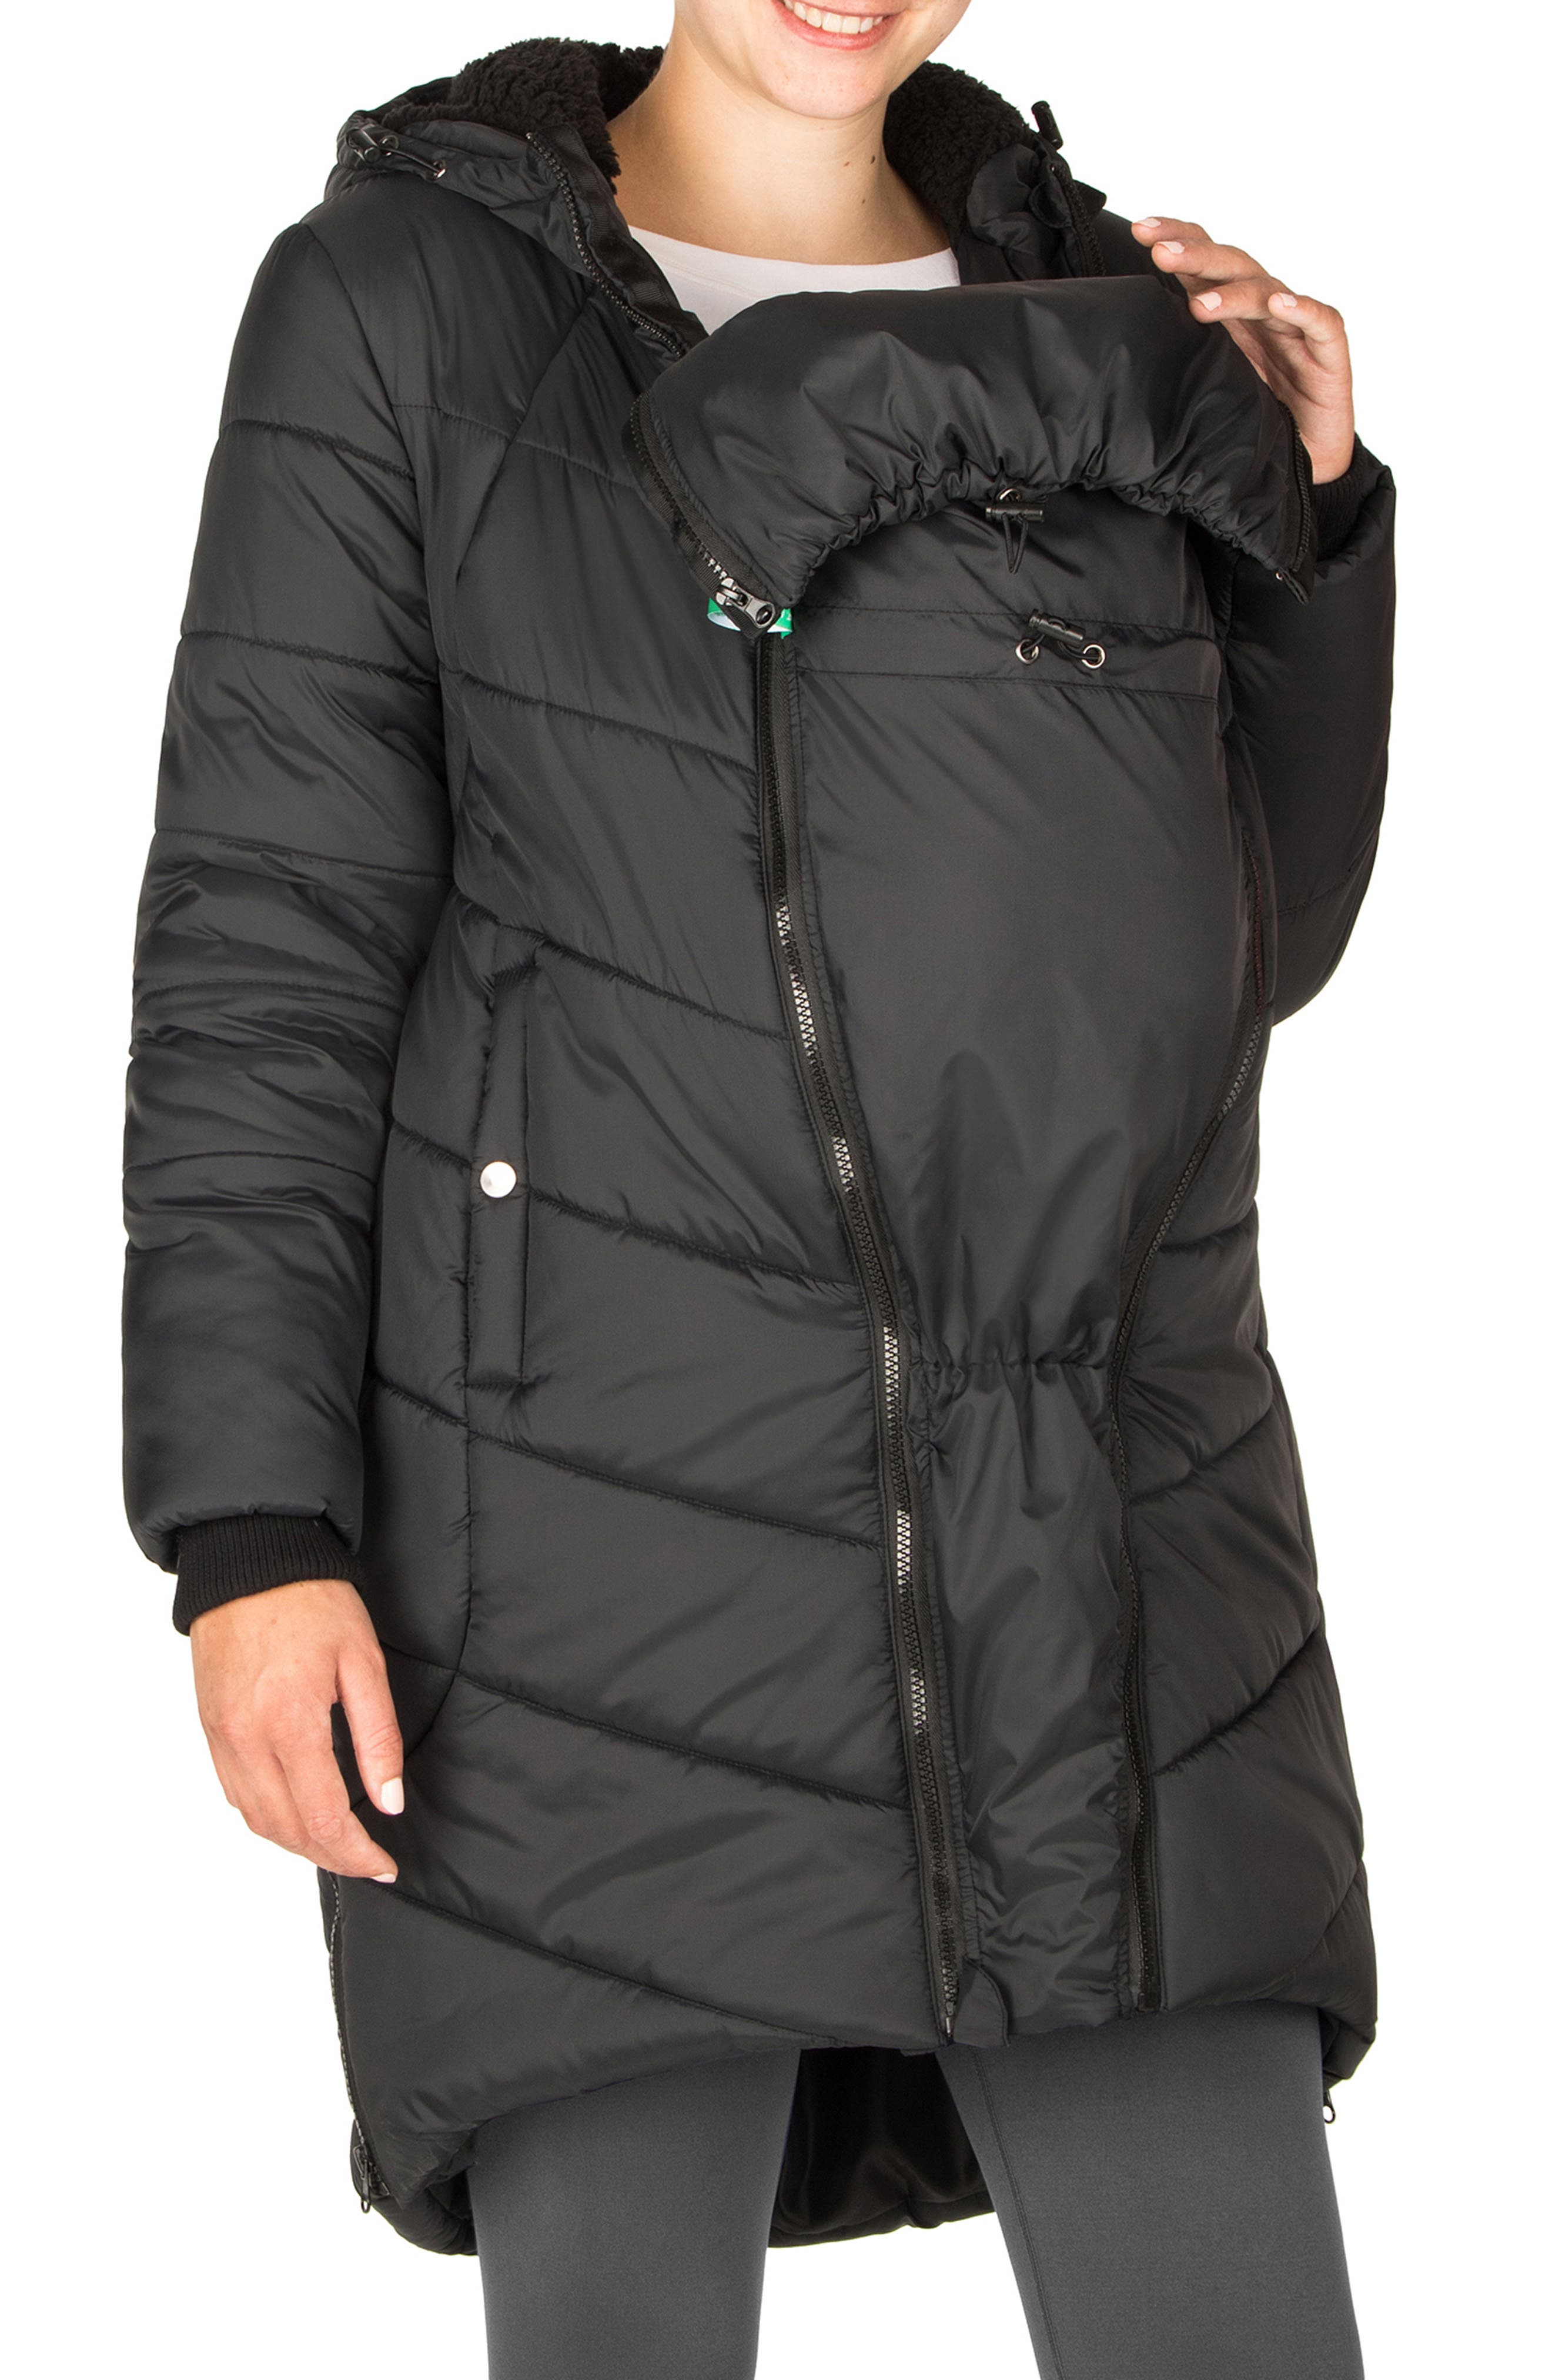 HGWXX7 Womens Warm Leopard Print Faux Fur Hooded Coat Jacket Winter Parka Outerwear